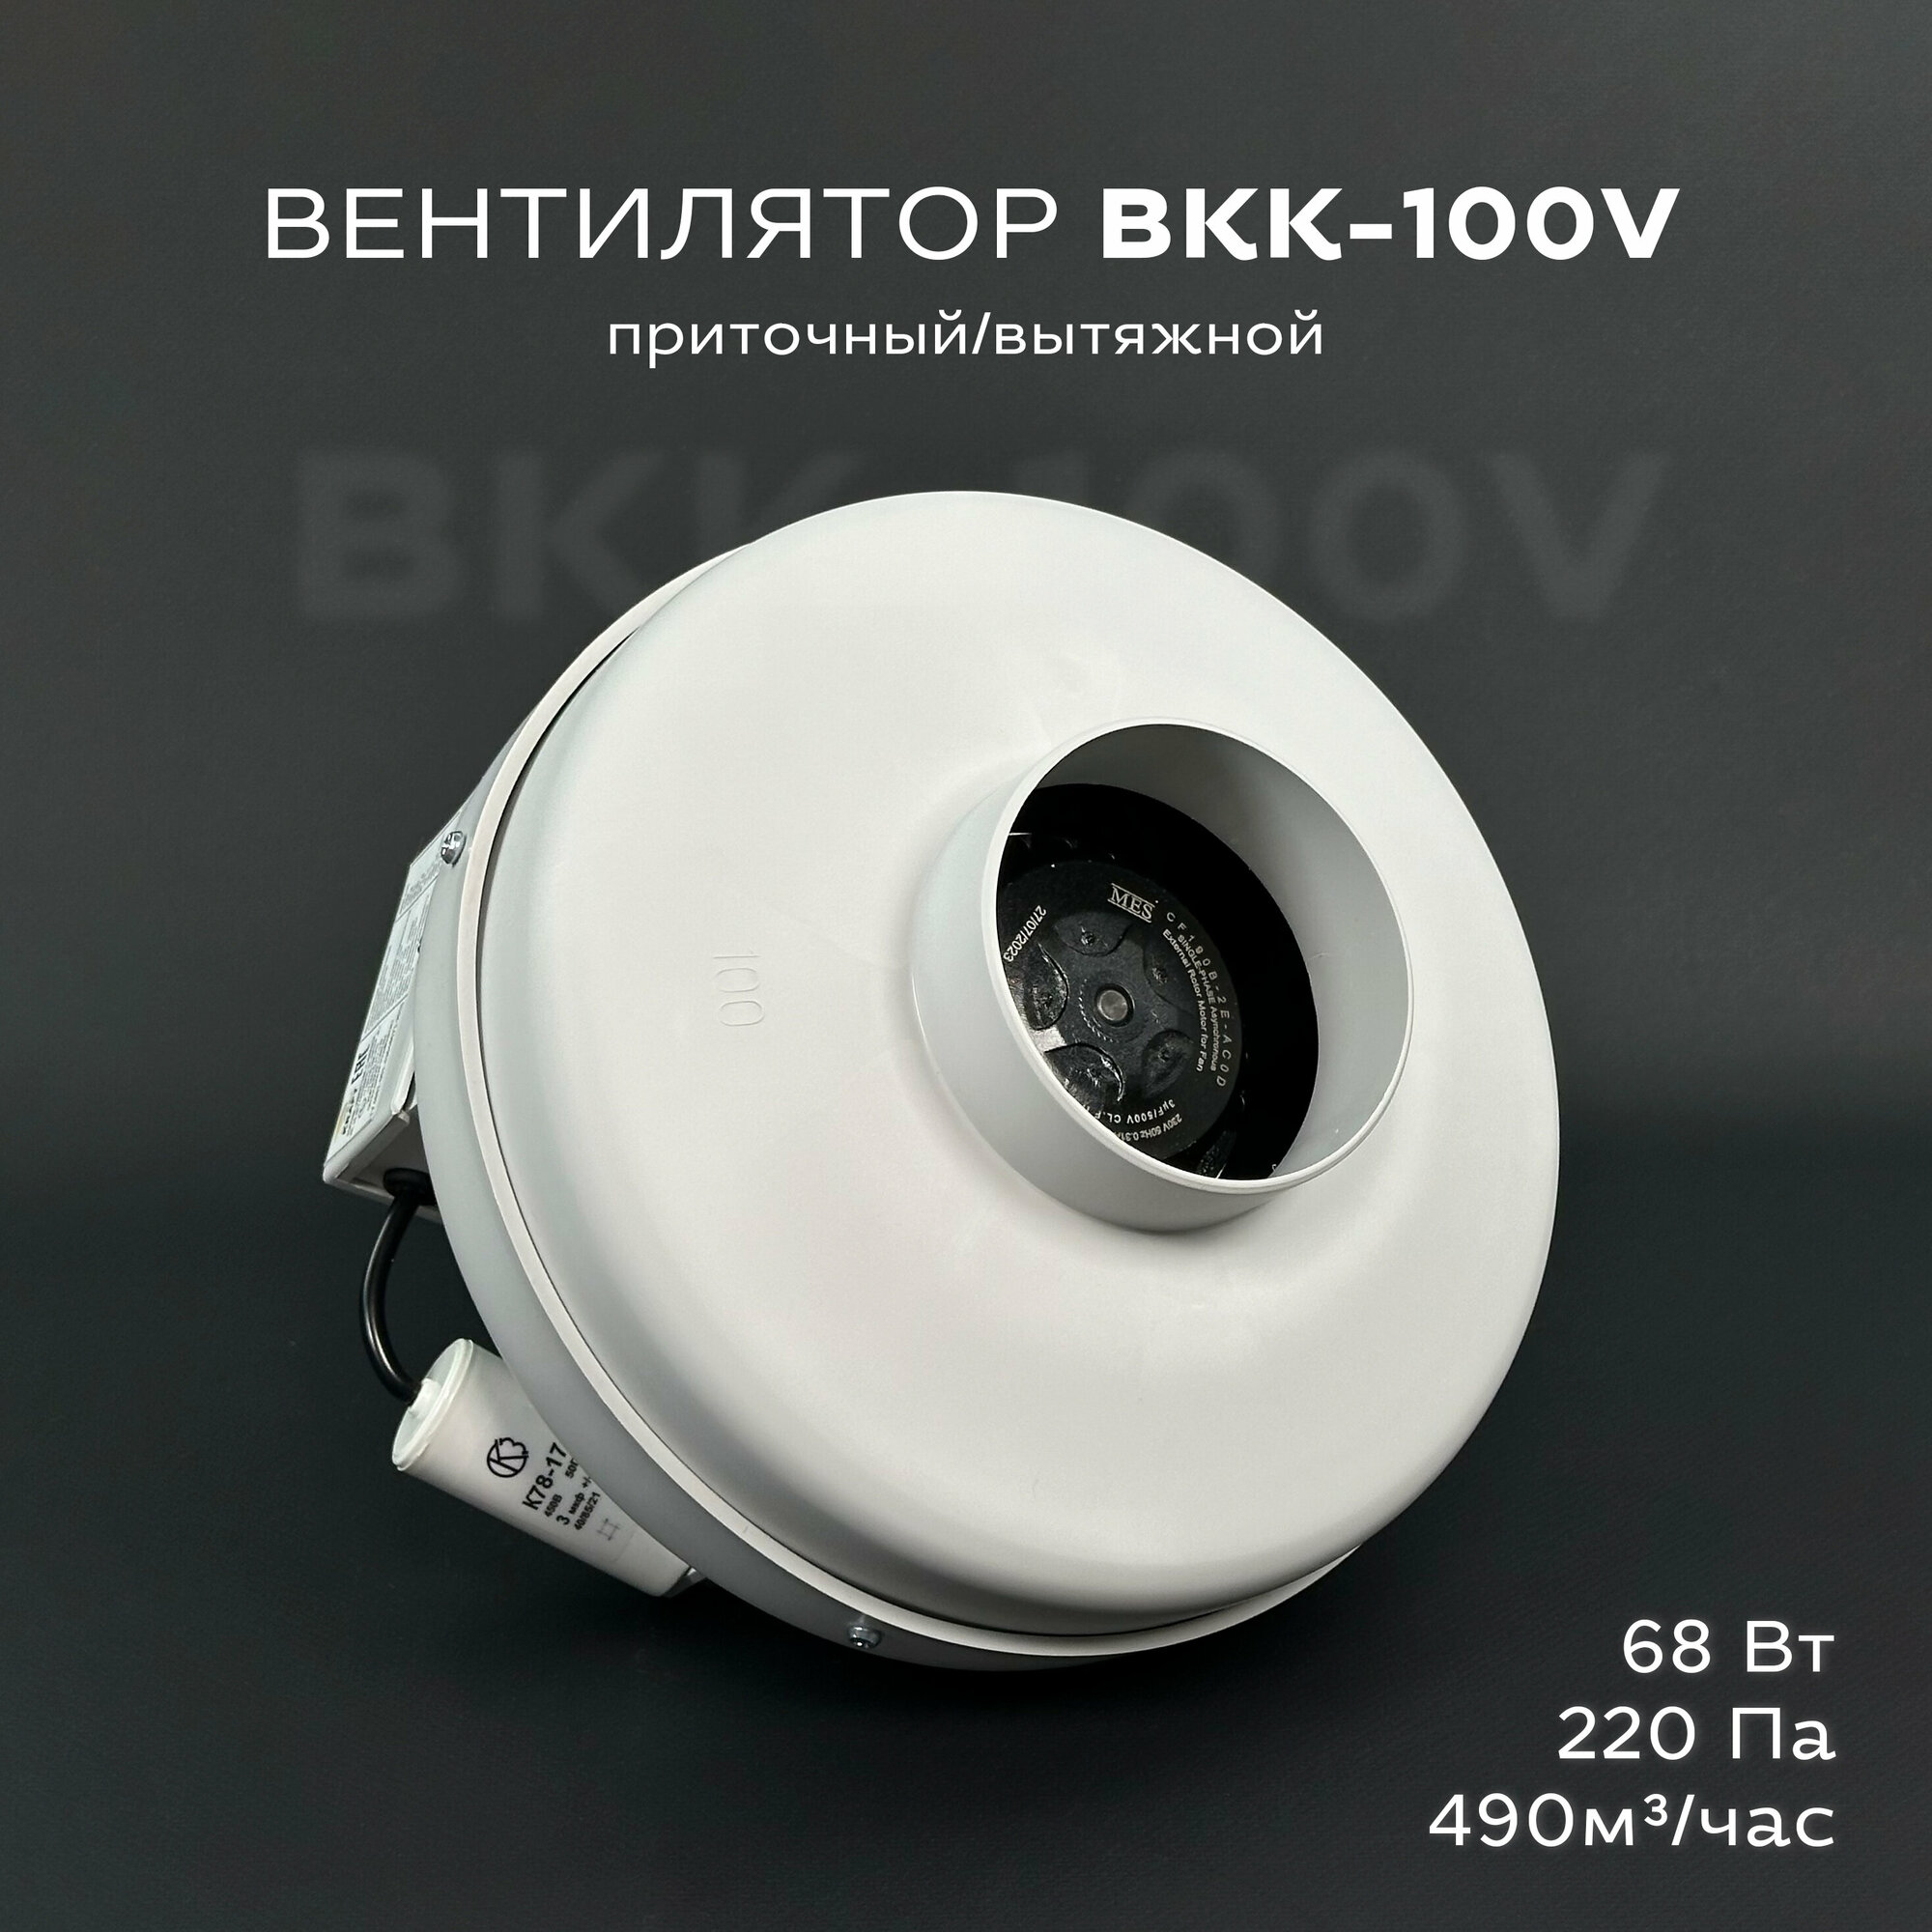 Вентилятор канальный круглый ВКК-100 V 220В 490 м3/час 220 Па 70 Вт IP 54 для круглых воздуховодов диаметром 100 мм вытяжной или приточный